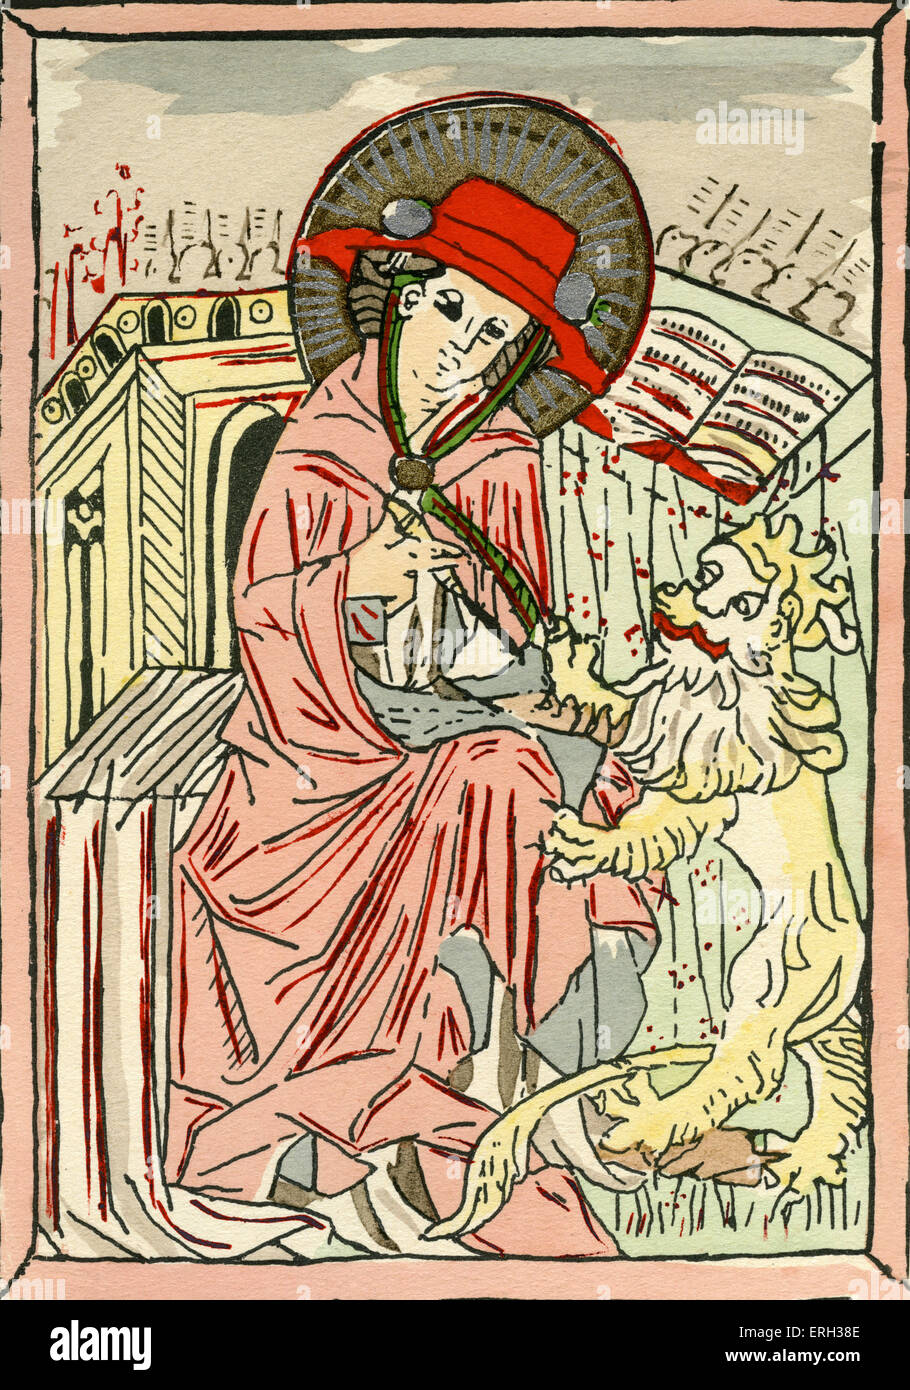 St. Hieronymus in der Tracht eines Kardinals mit seiner Ikonographie; ein Löwe und Schreibmaterial.  Auch bekannt als der Heilige Hieronymus. Stockfoto